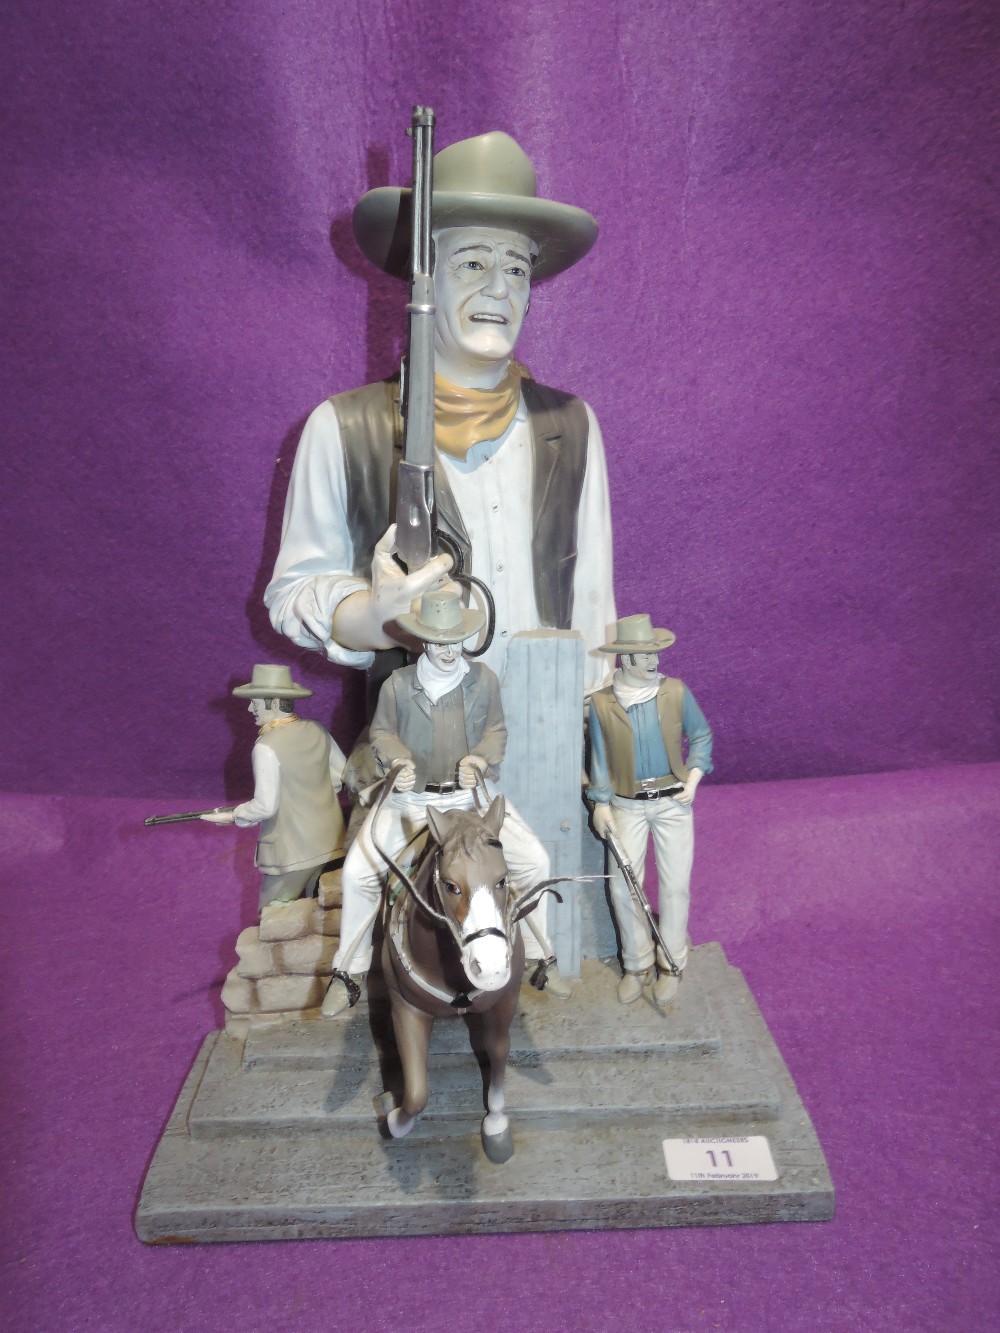 A diorama of John Wayne cow boy figures